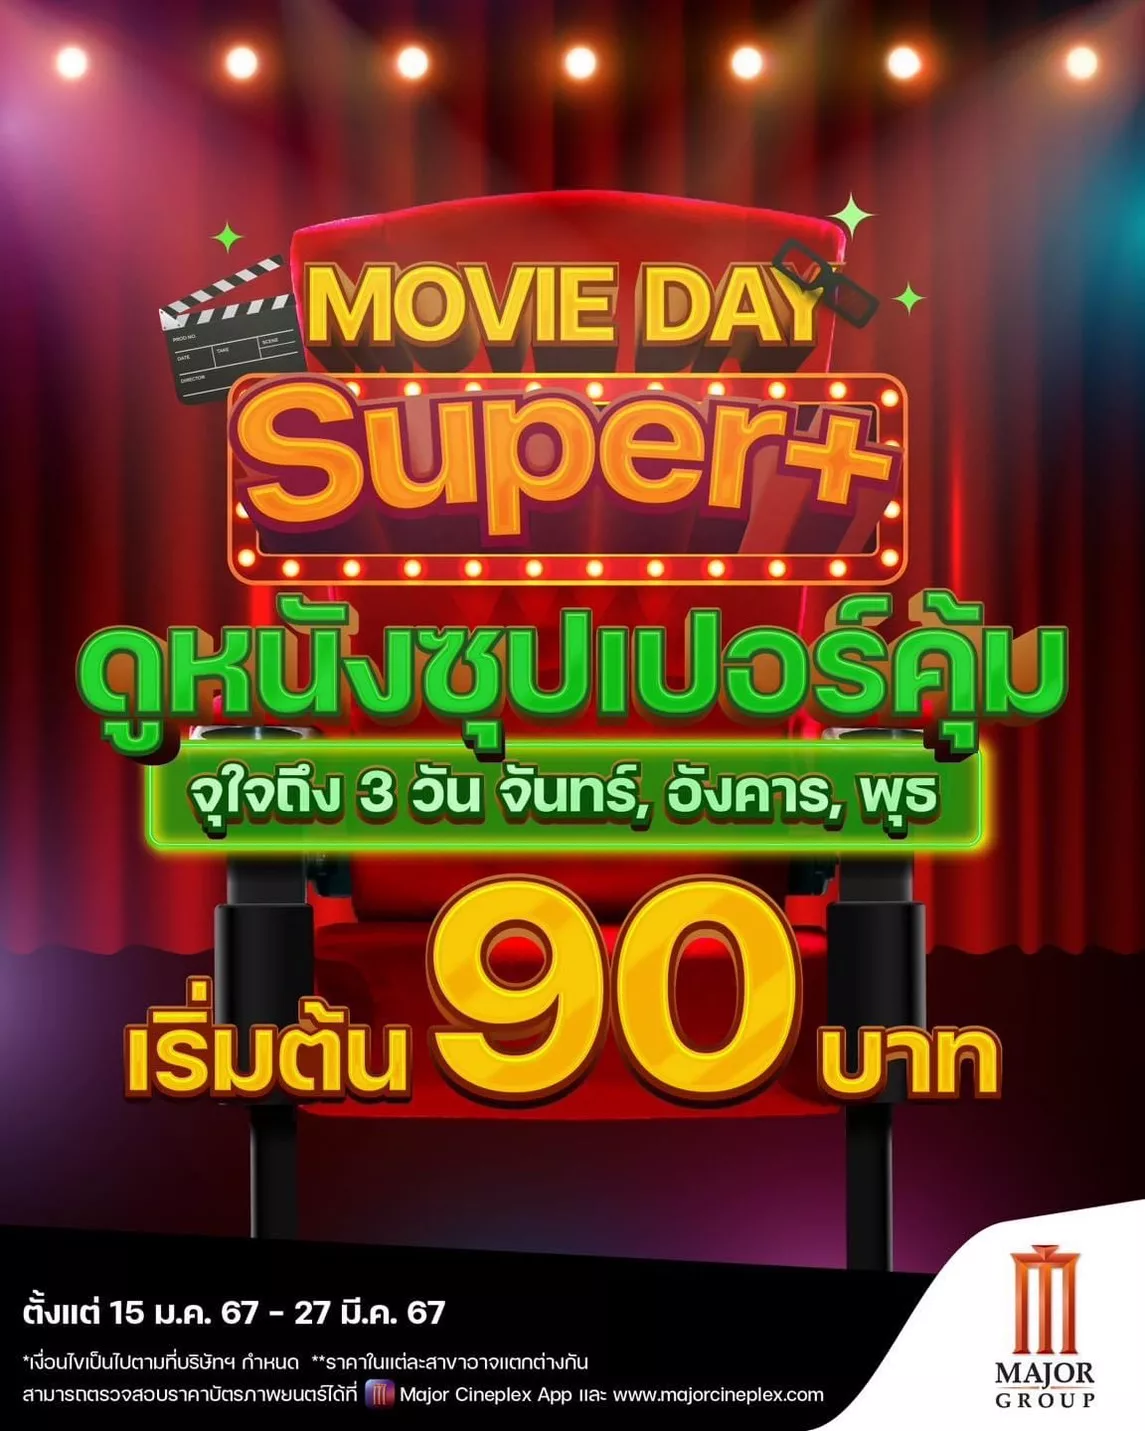 Movie Day Super+ ดูหนังซุปเปอร์คุ้ม จุใจถึง 3 วัน จันทร์, อังคาร, พุธ เอาใจคอหนัง เริ่มต้น 90.-